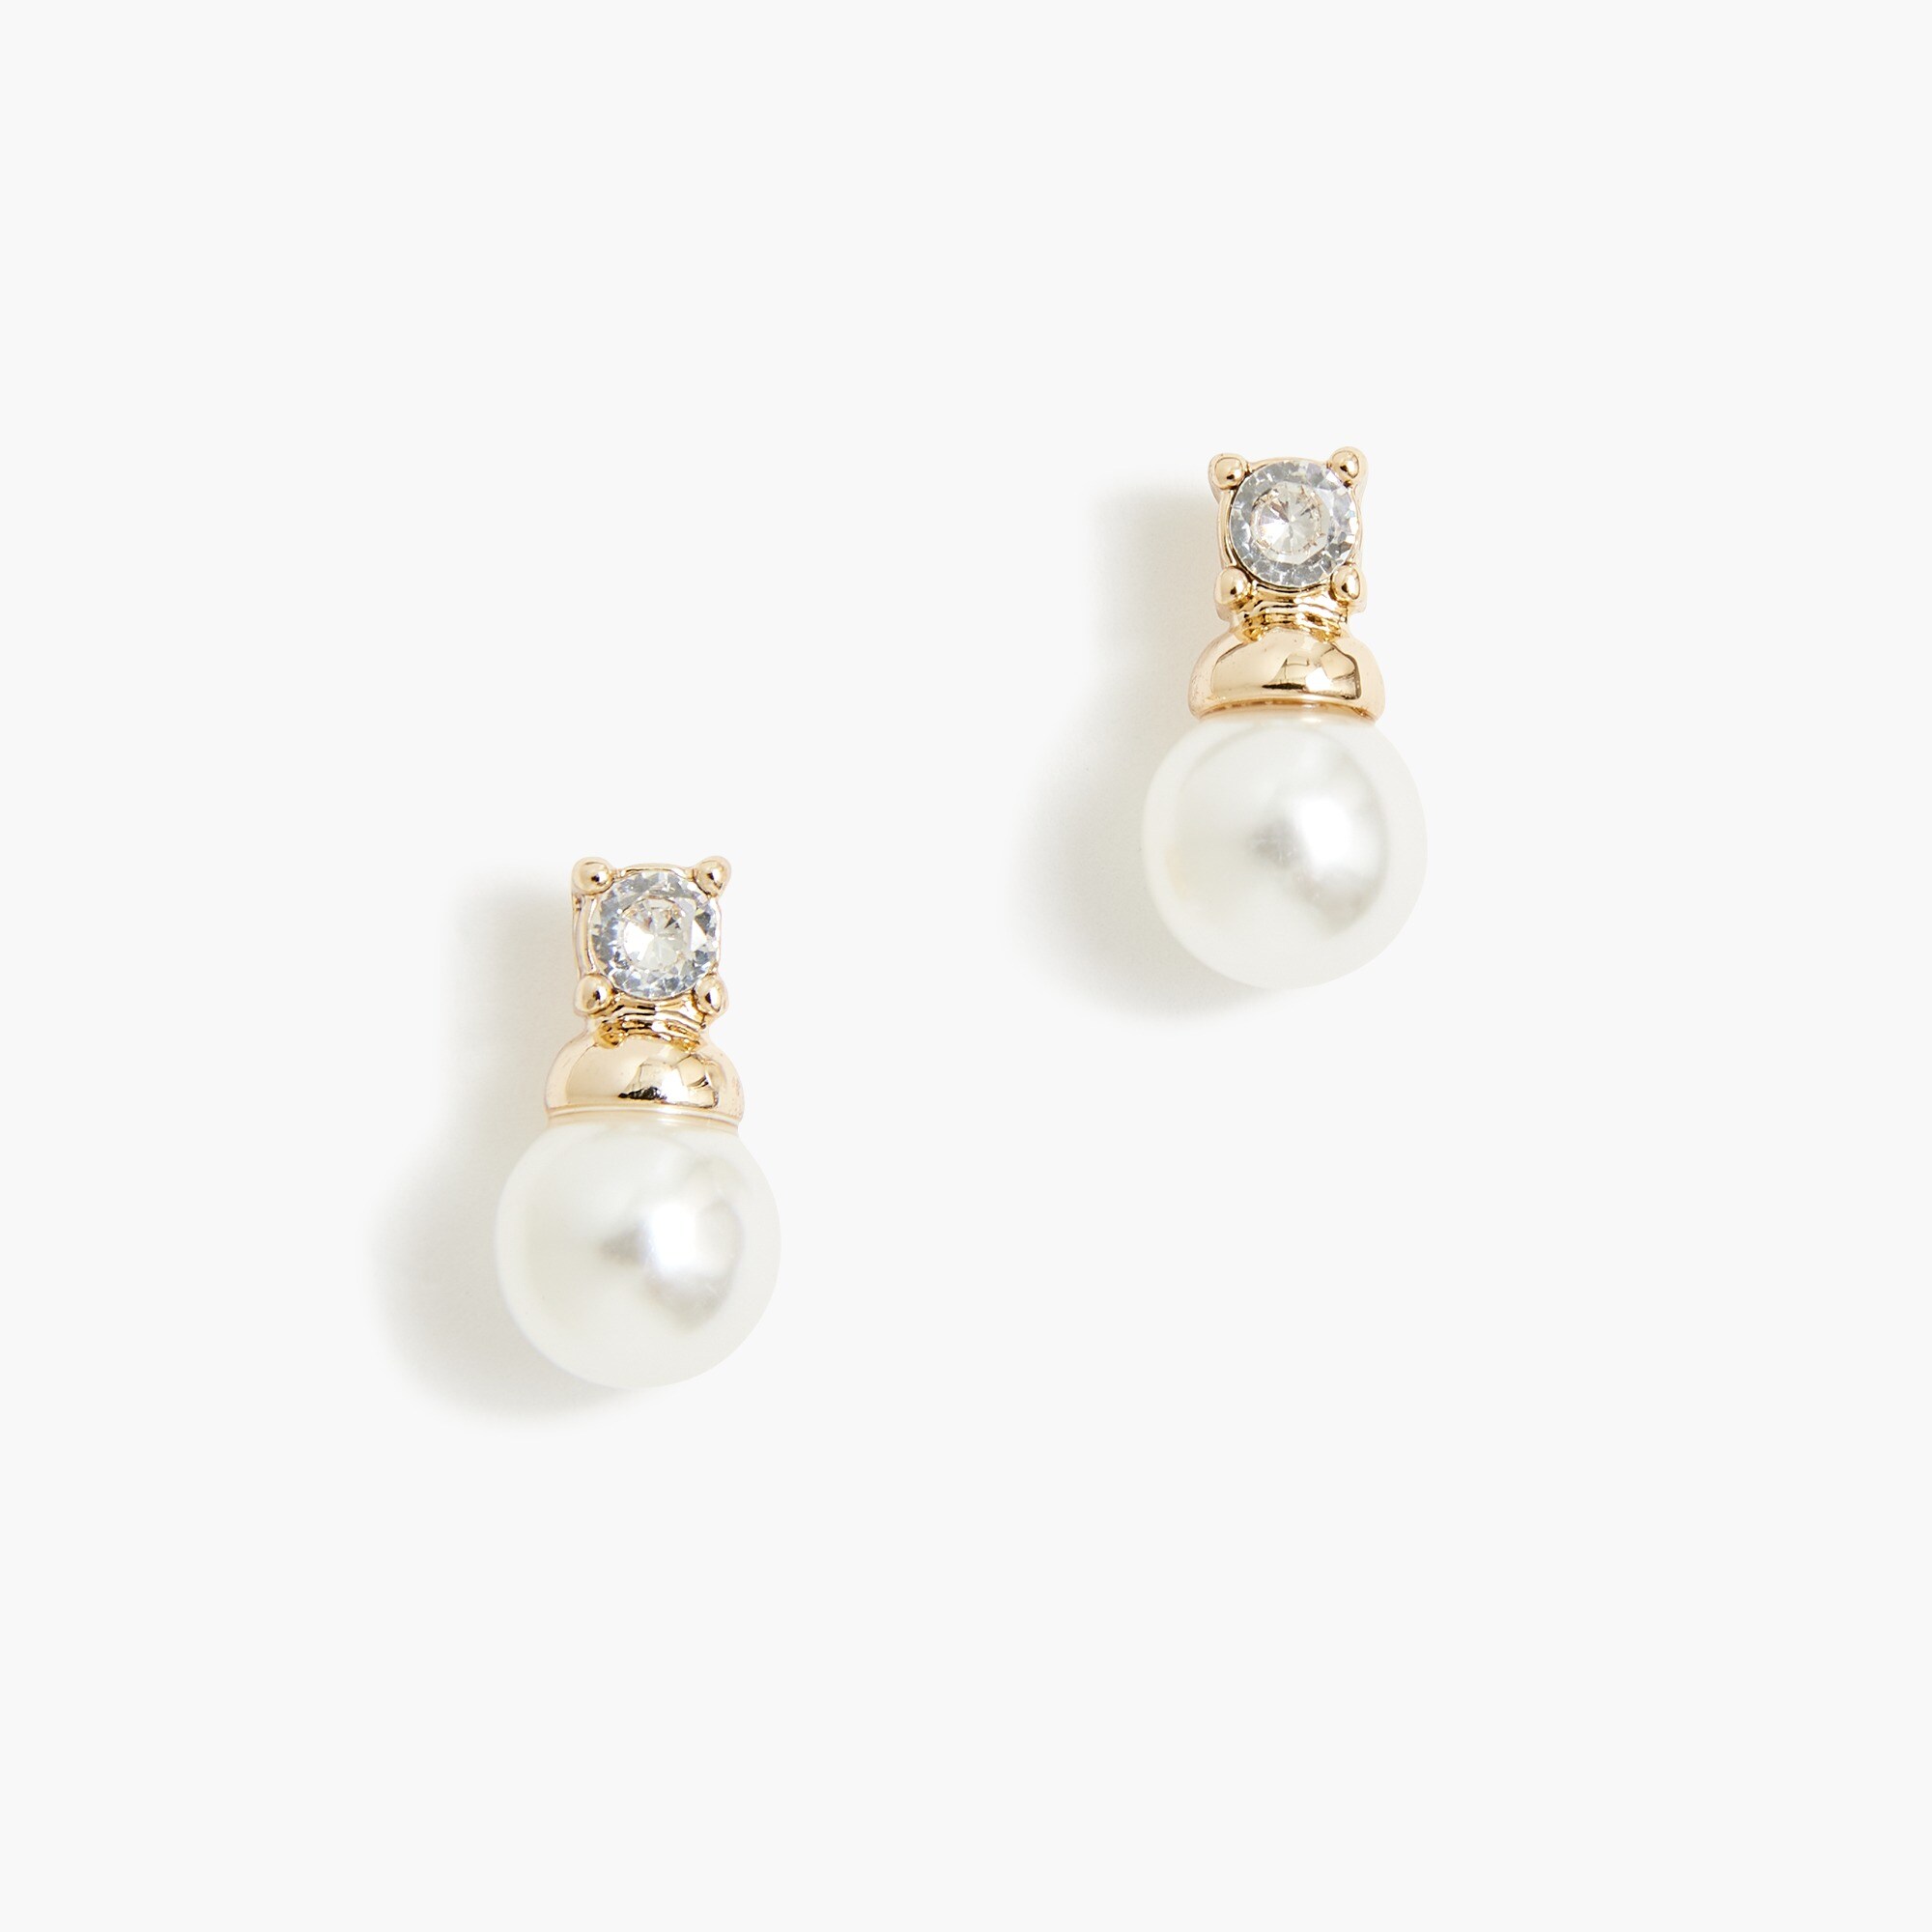  Pearl crystal stud earrings